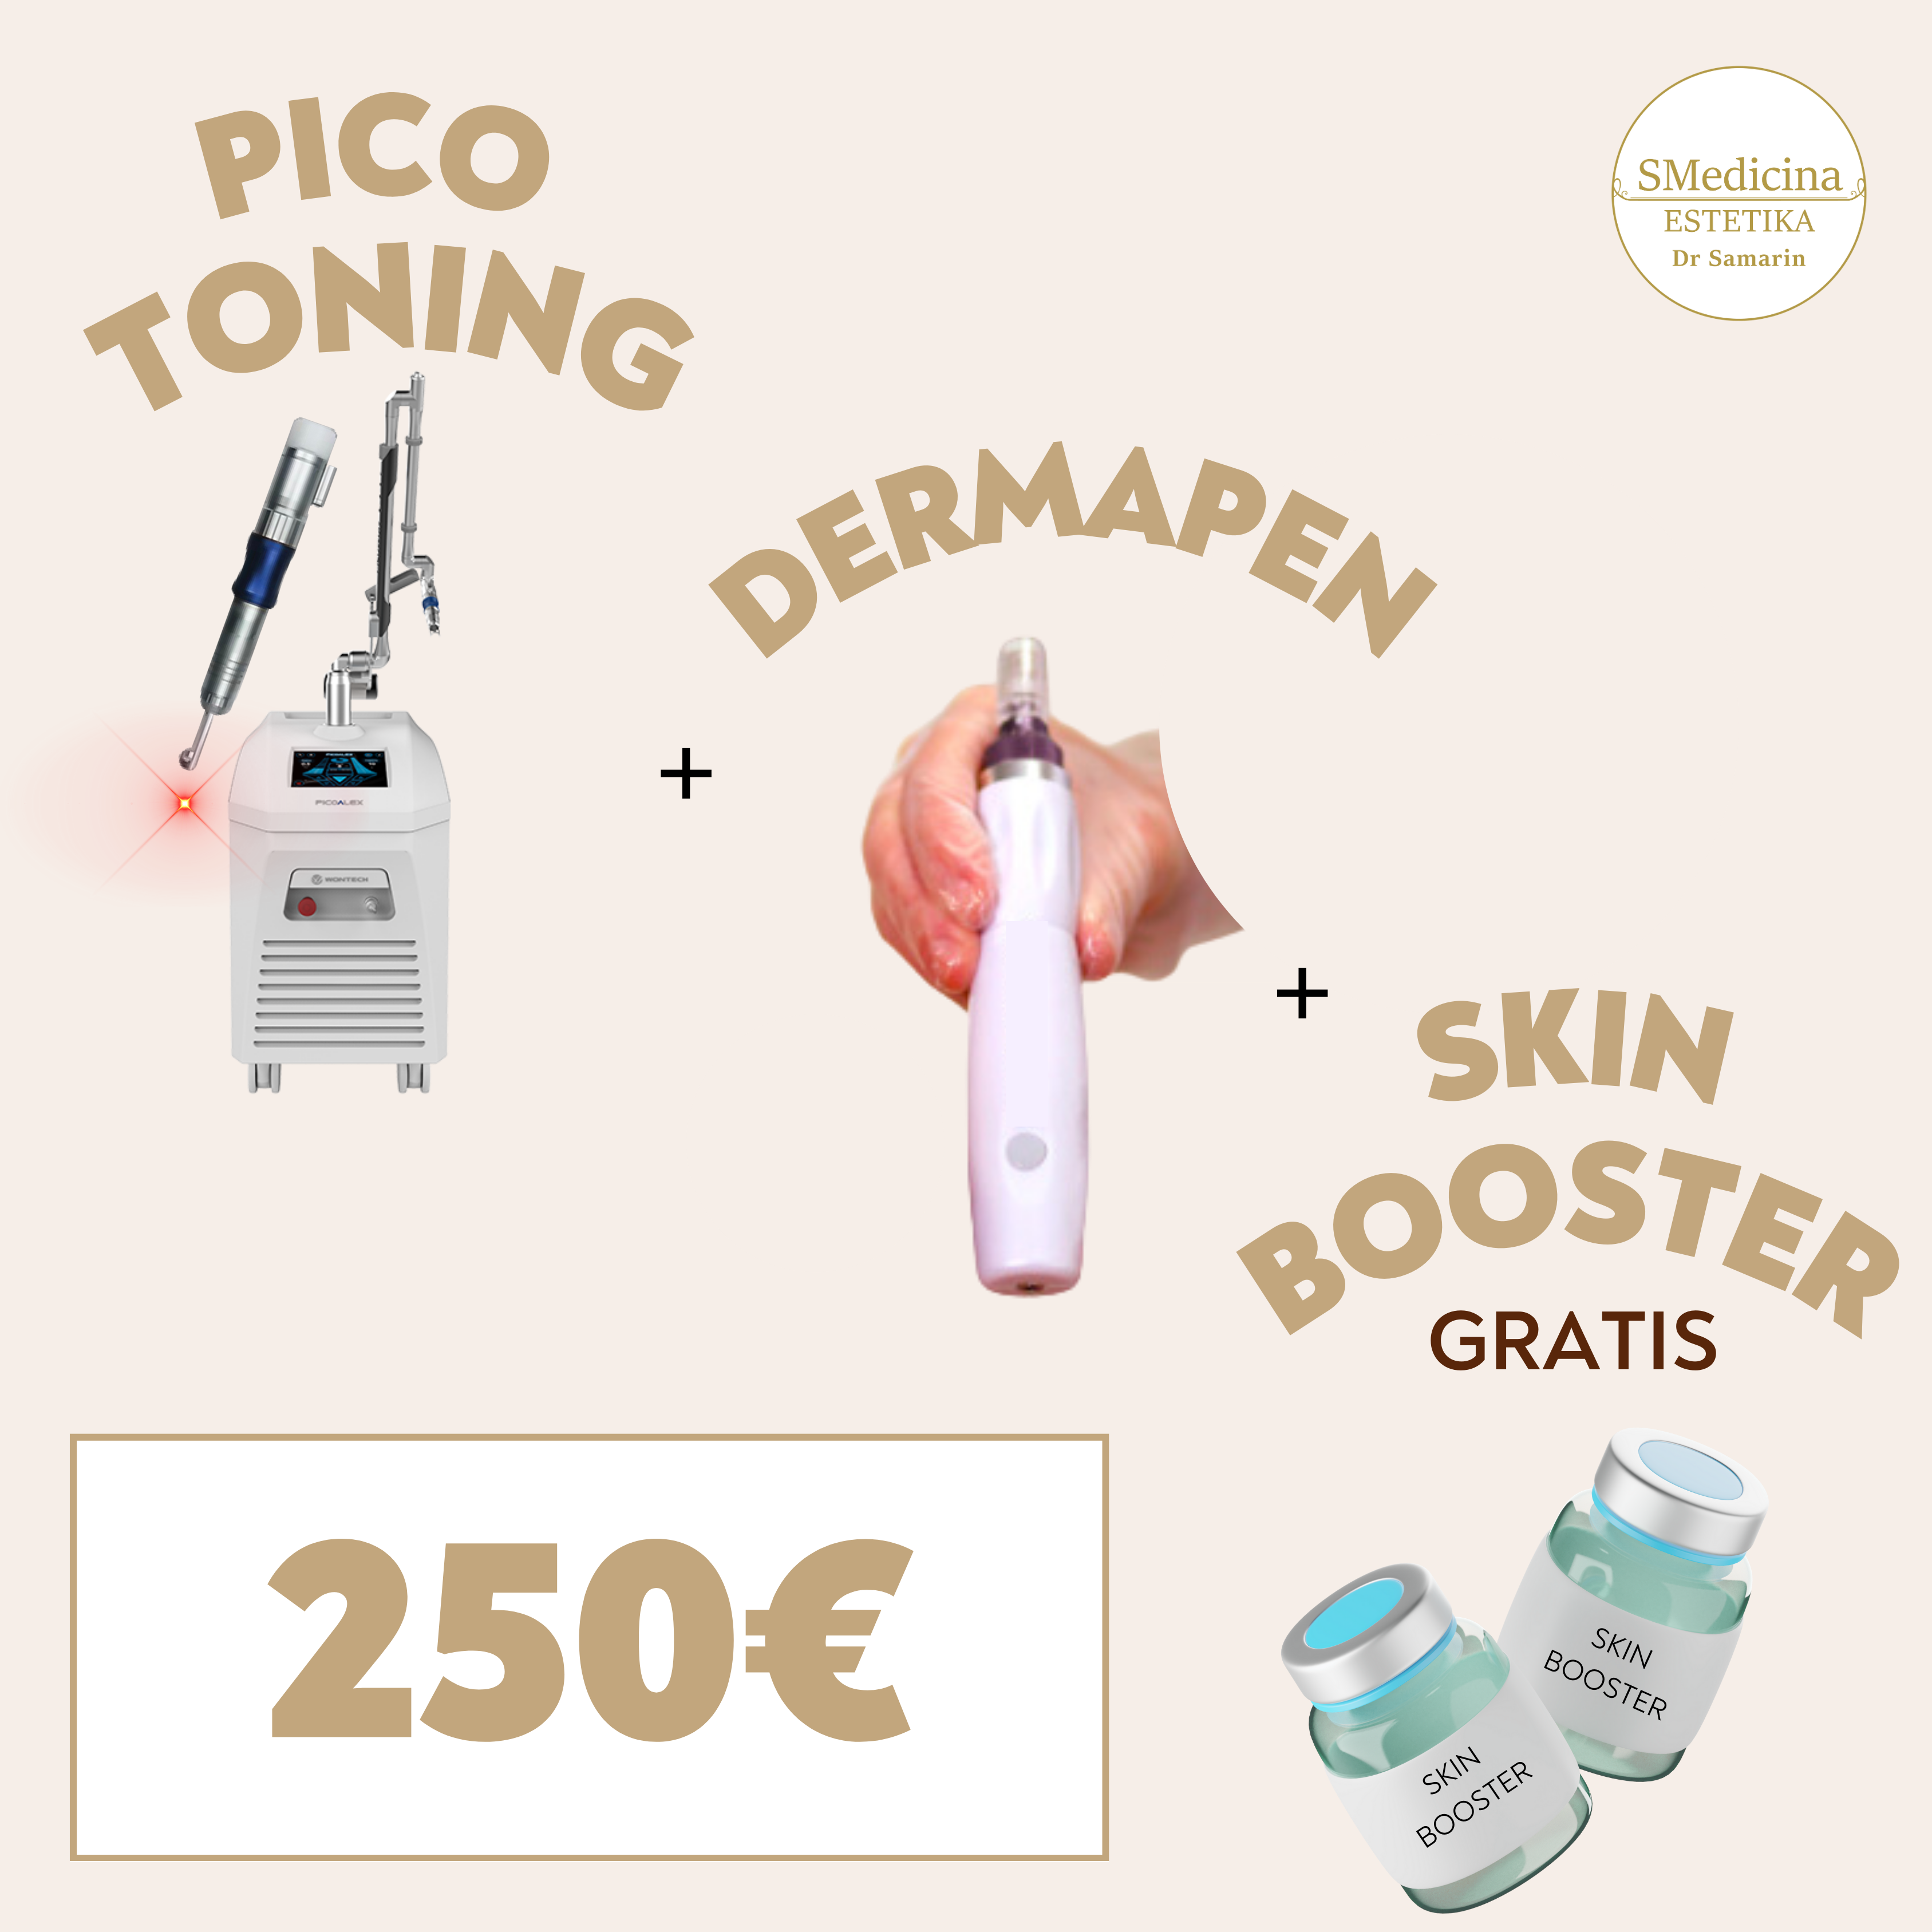 Pico Toning +  DermaPen + GRATIS Skin booster